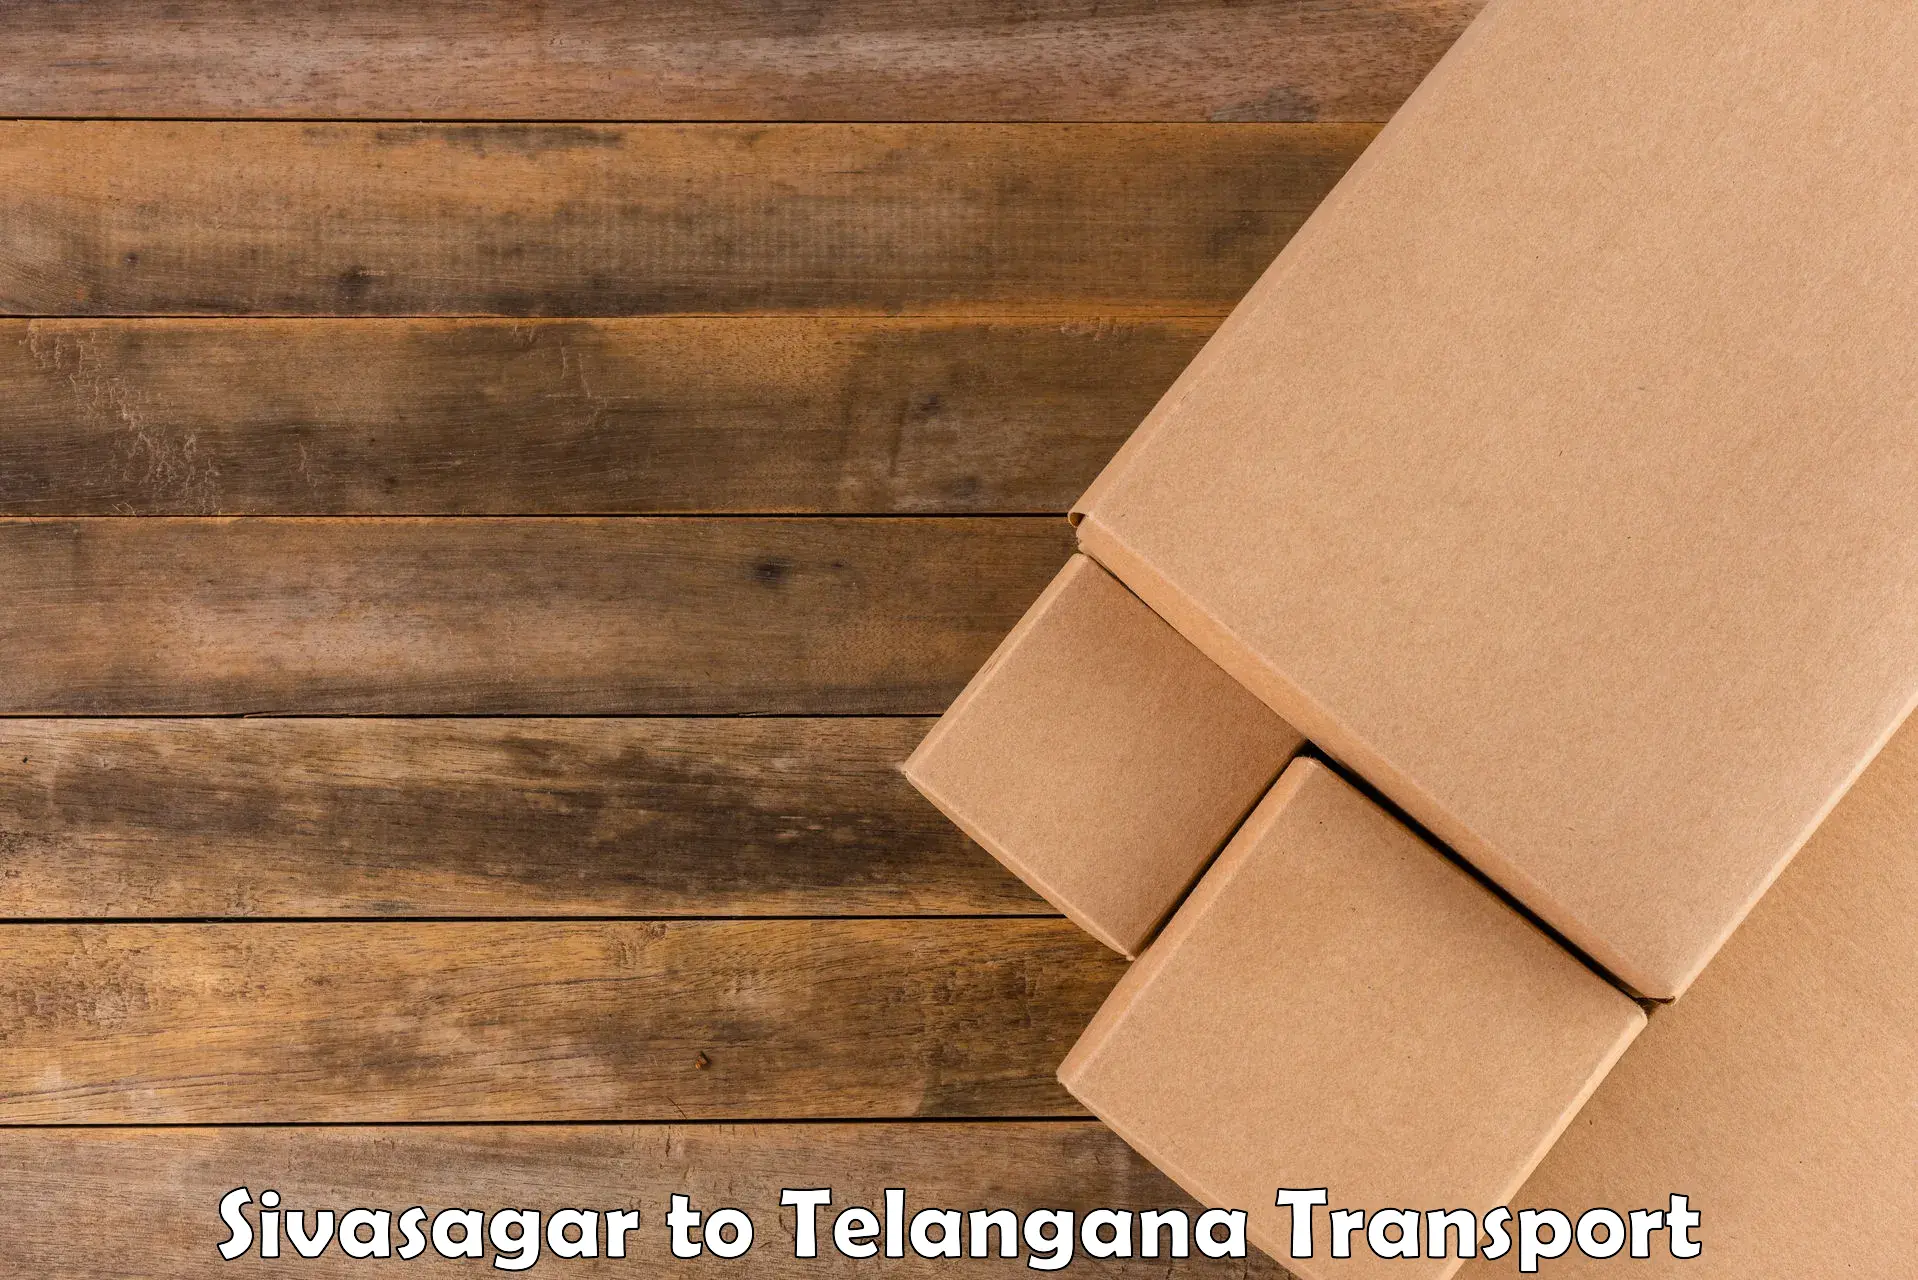 Goods transport services Sivasagar to Jangaon